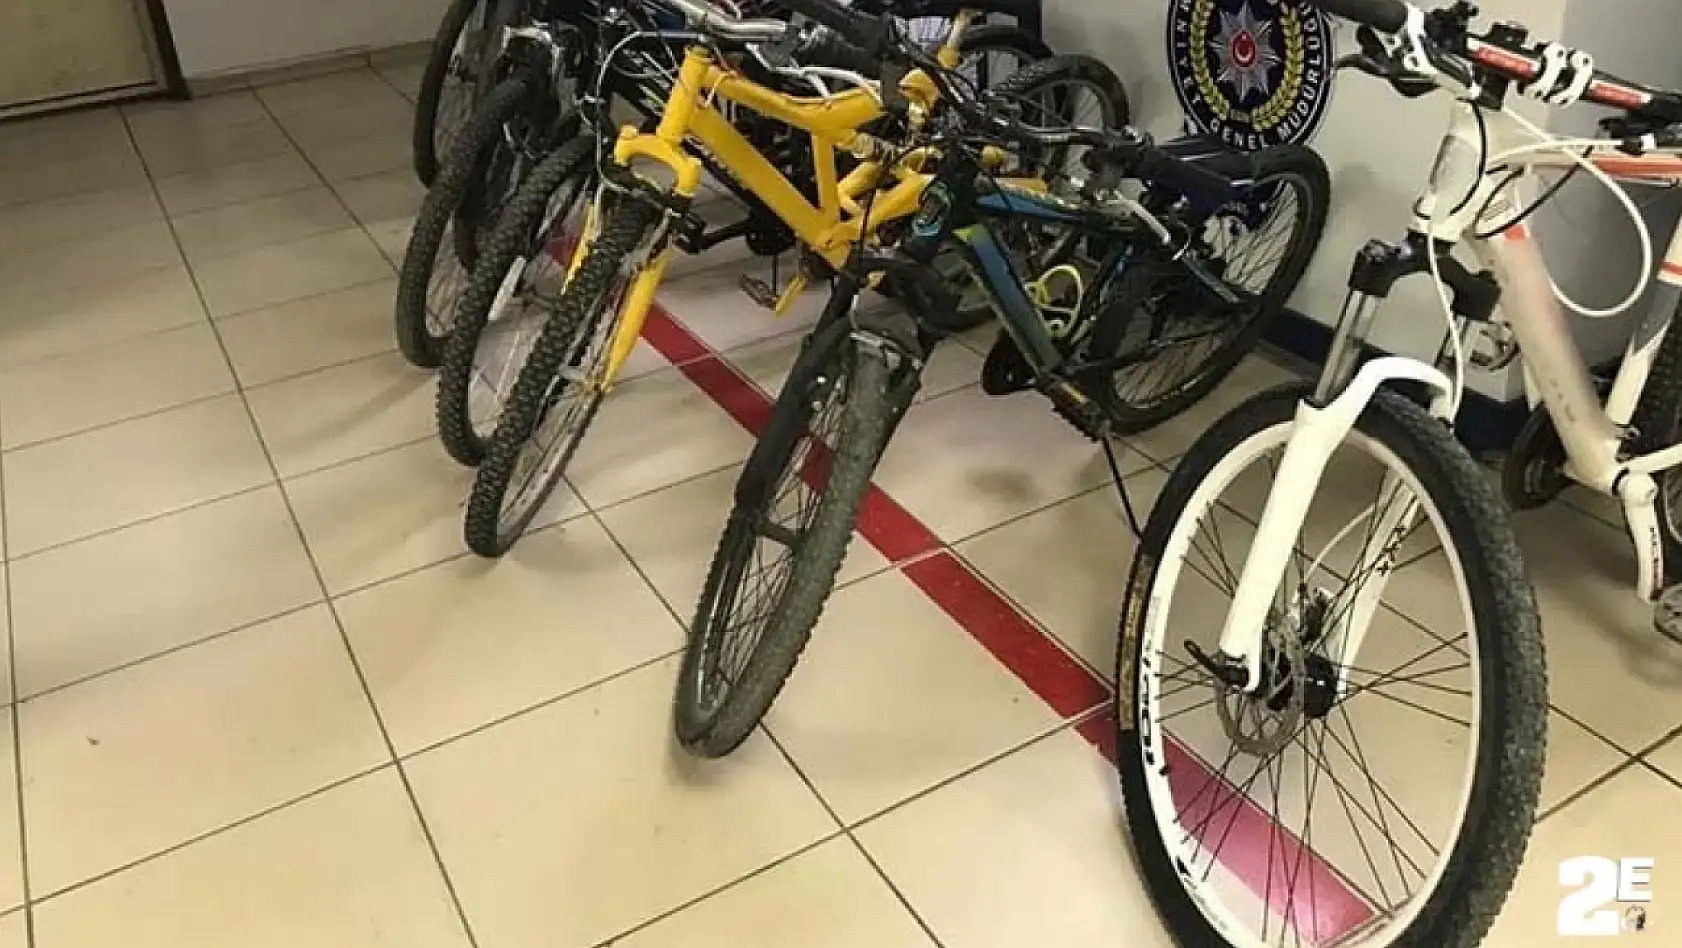 Bisiklet hırsızları yakalandı